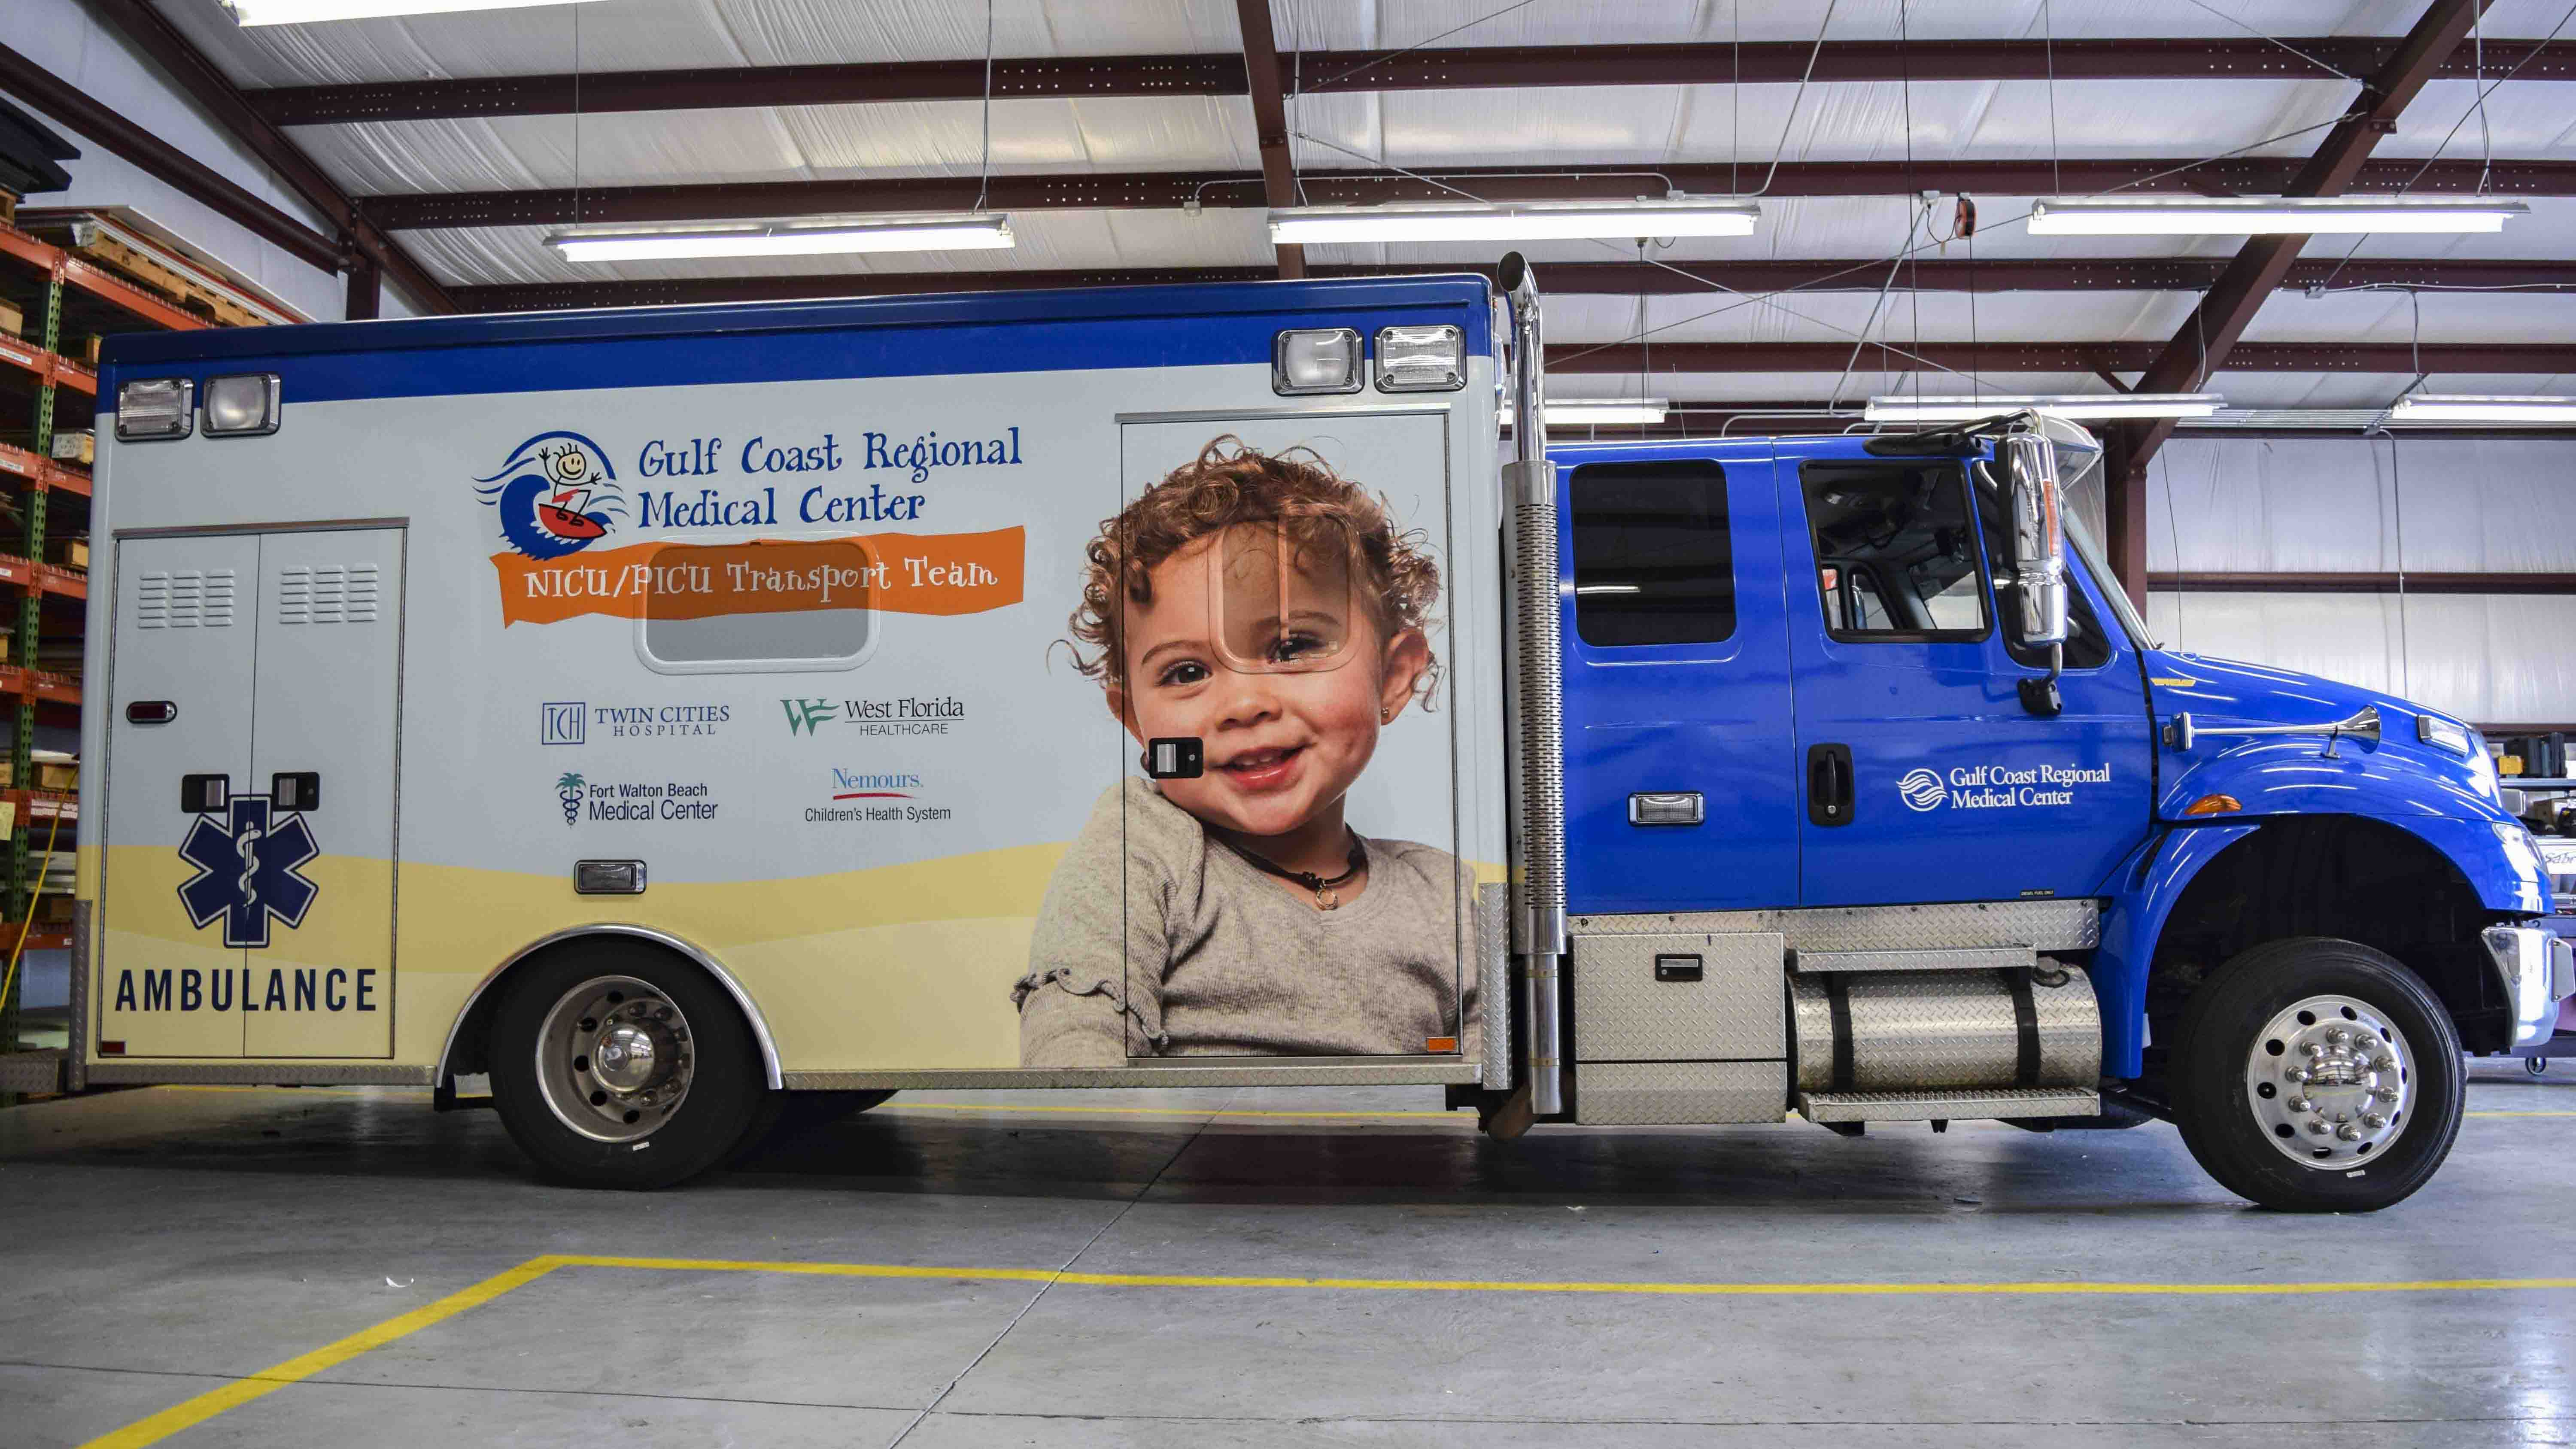 Pensacola Sign Vehicle Wraps - Ambulance Wraps for Gulf Coast Regional Medical Center